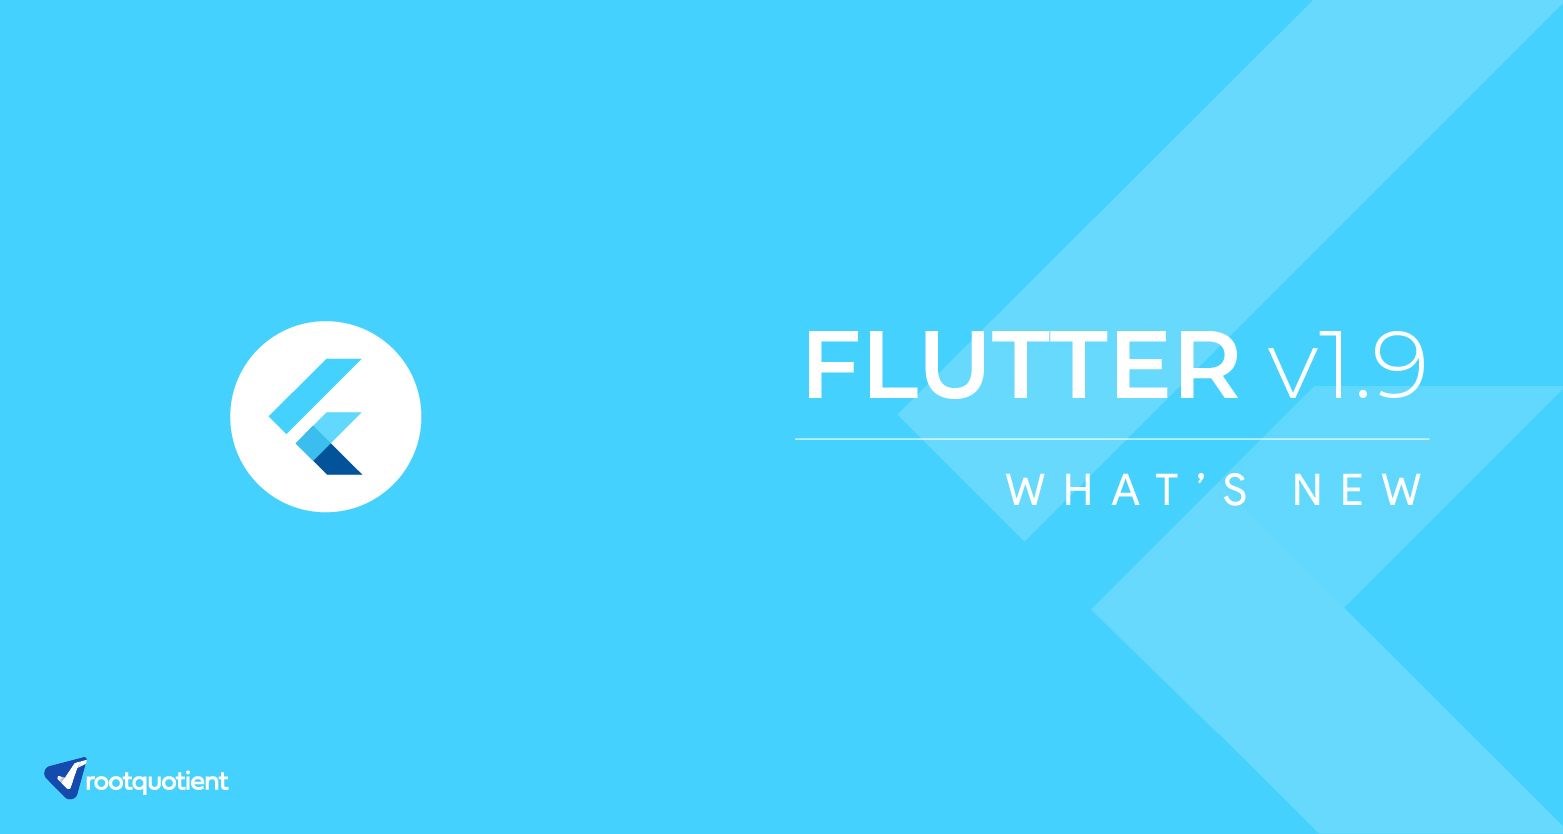 What's new in Flutter v1.9?